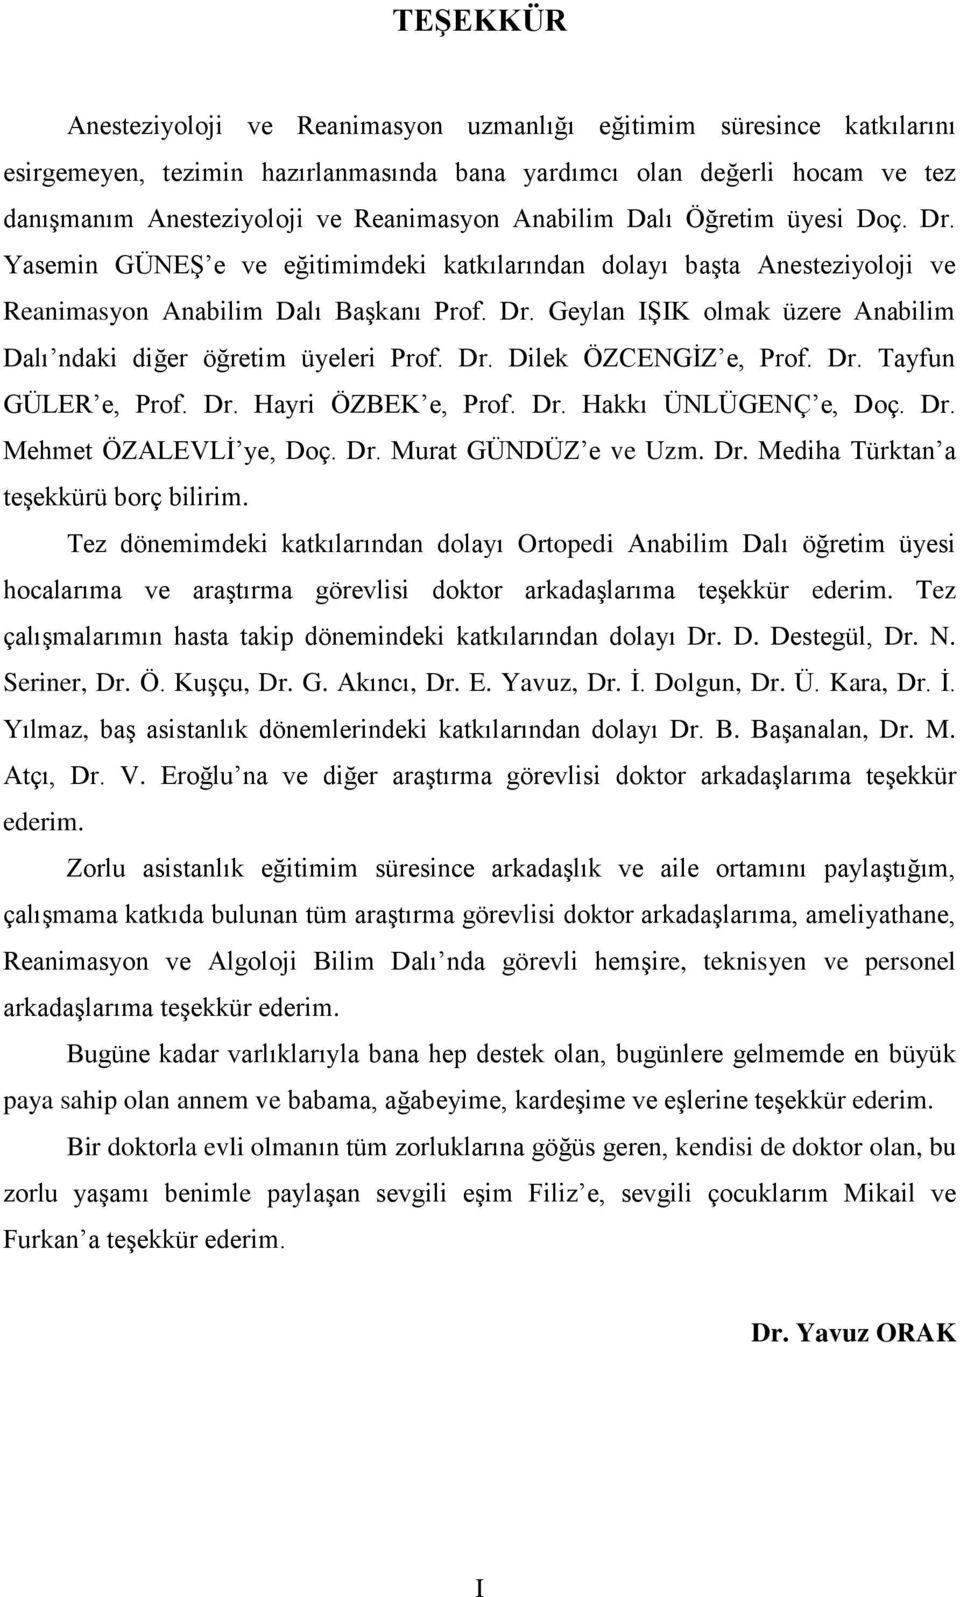 Dr. Dilek ÖZCENGİZ e, Prof. Dr. Tayfun GÜLER e, Prof. Dr. Hayri ÖZBEK e, Prof. Dr. Hakkı ÜNLÜGENÇ e, Doç. Dr. Mehmet ÖZALEVLİ ye, Doç. Dr. Murat GÜNDÜZ e ve Uzm. Dr. Mediha Türktan a teşekkürü borç bilirim.